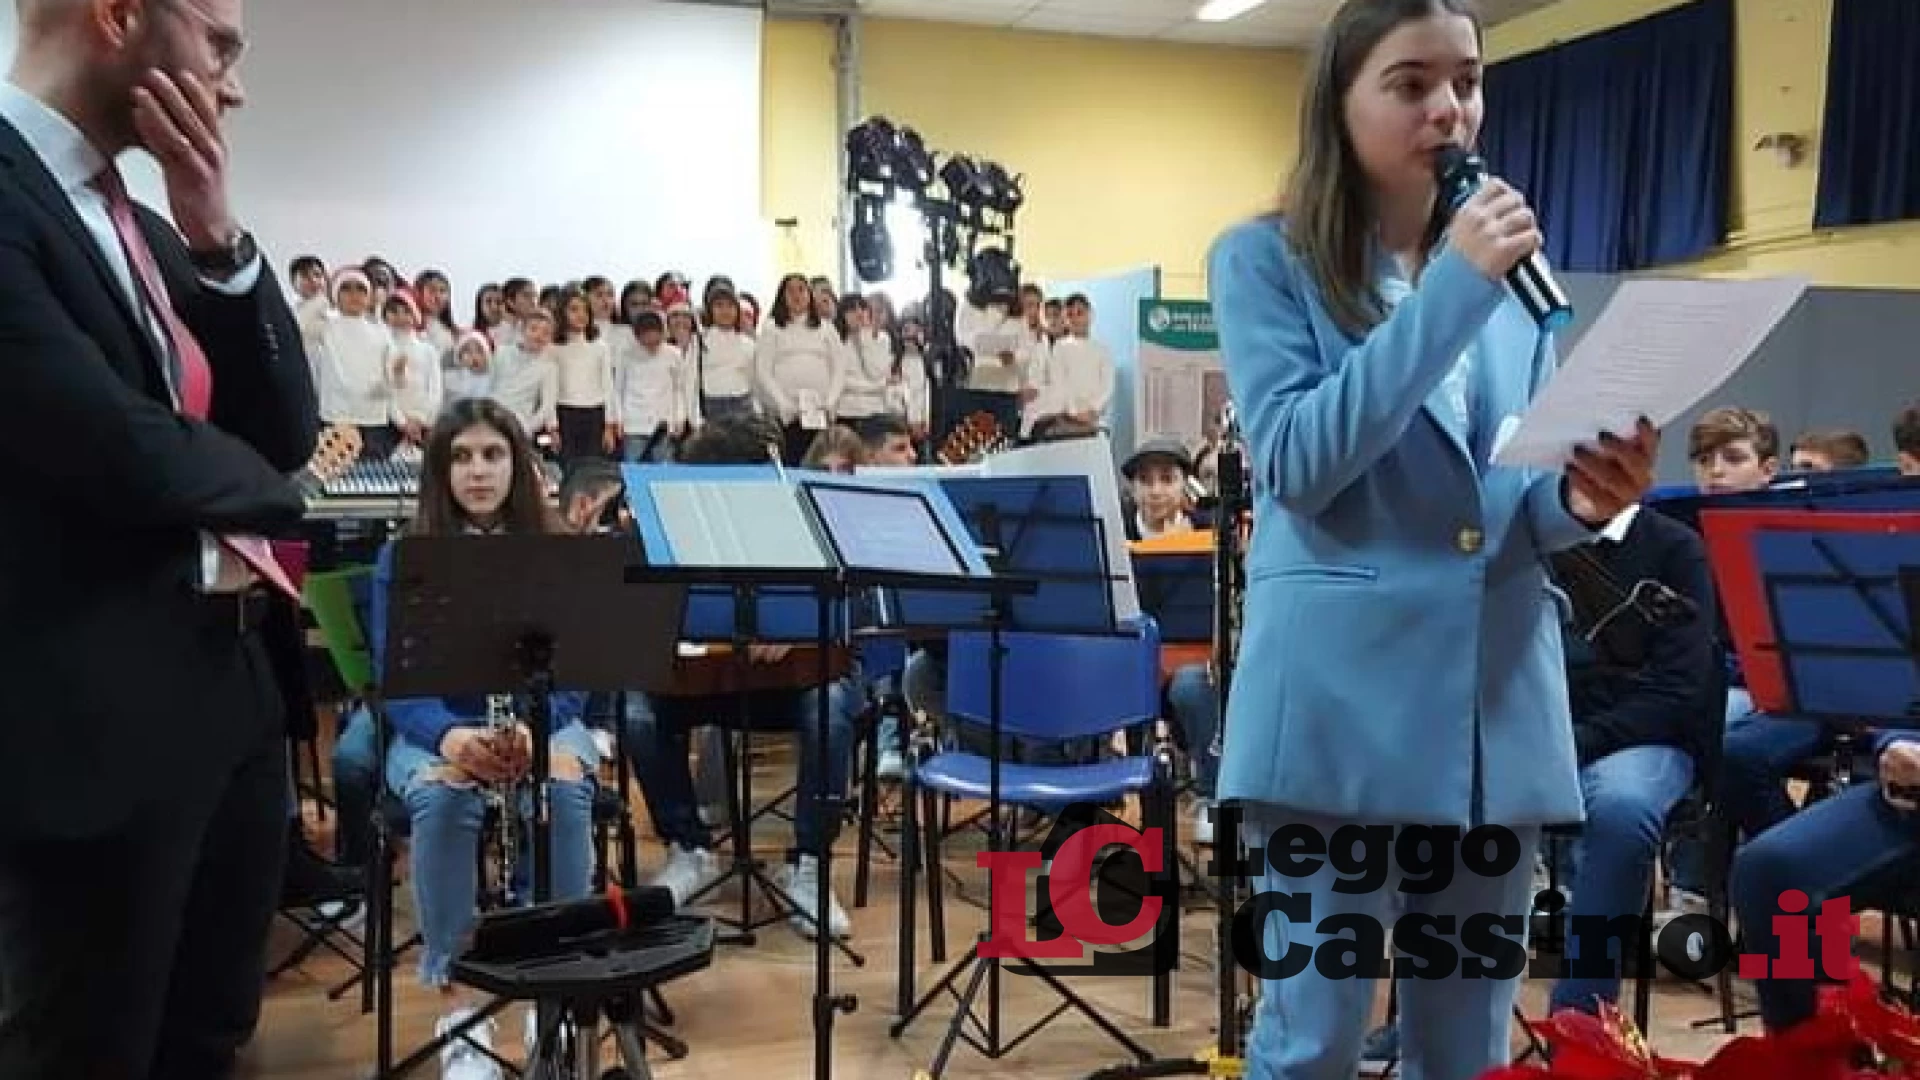 Un grande successo il Concerto di Natale organizzato dall'I.C. Cassino 3